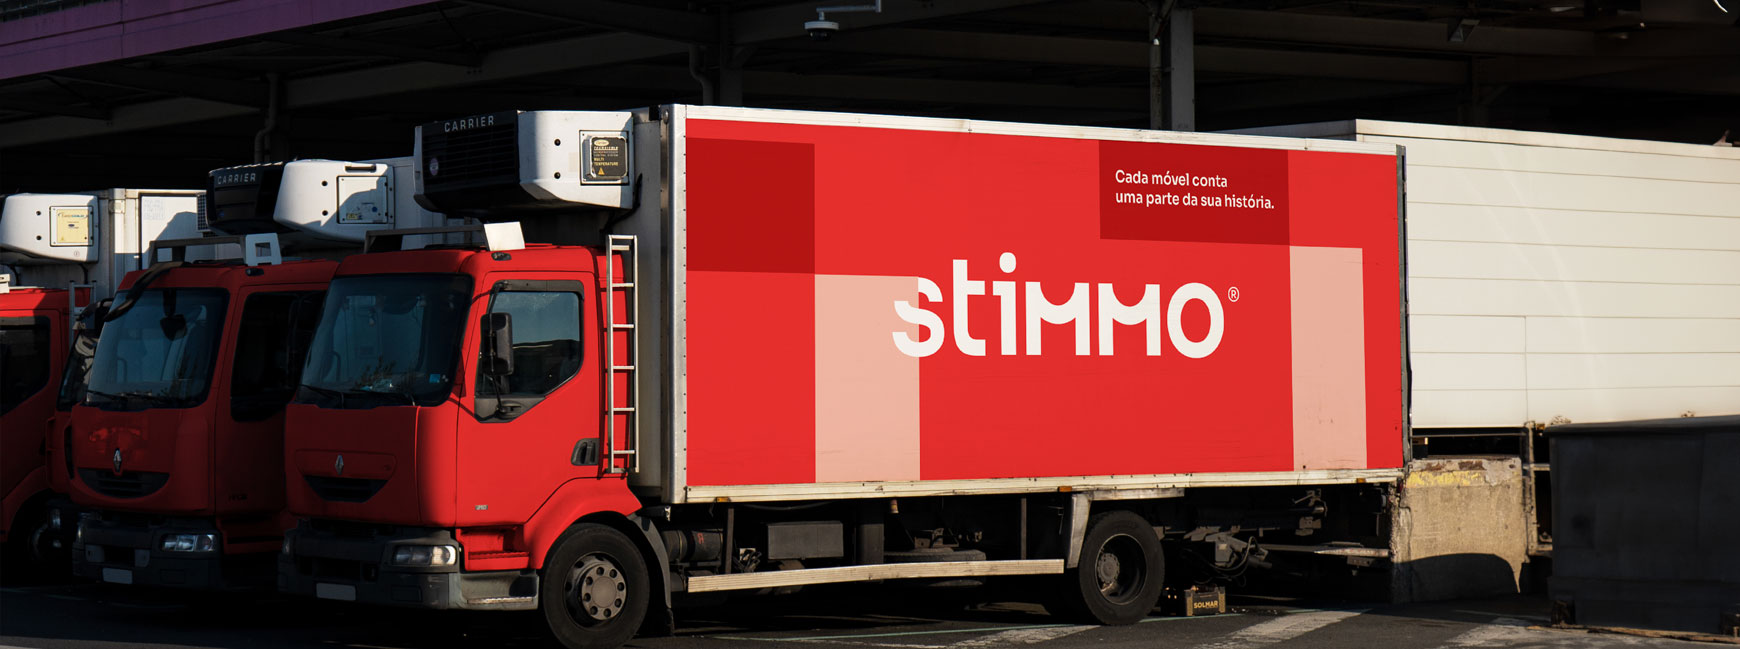 Stimmo é a nova marca de móveis do Grupo Simonetto